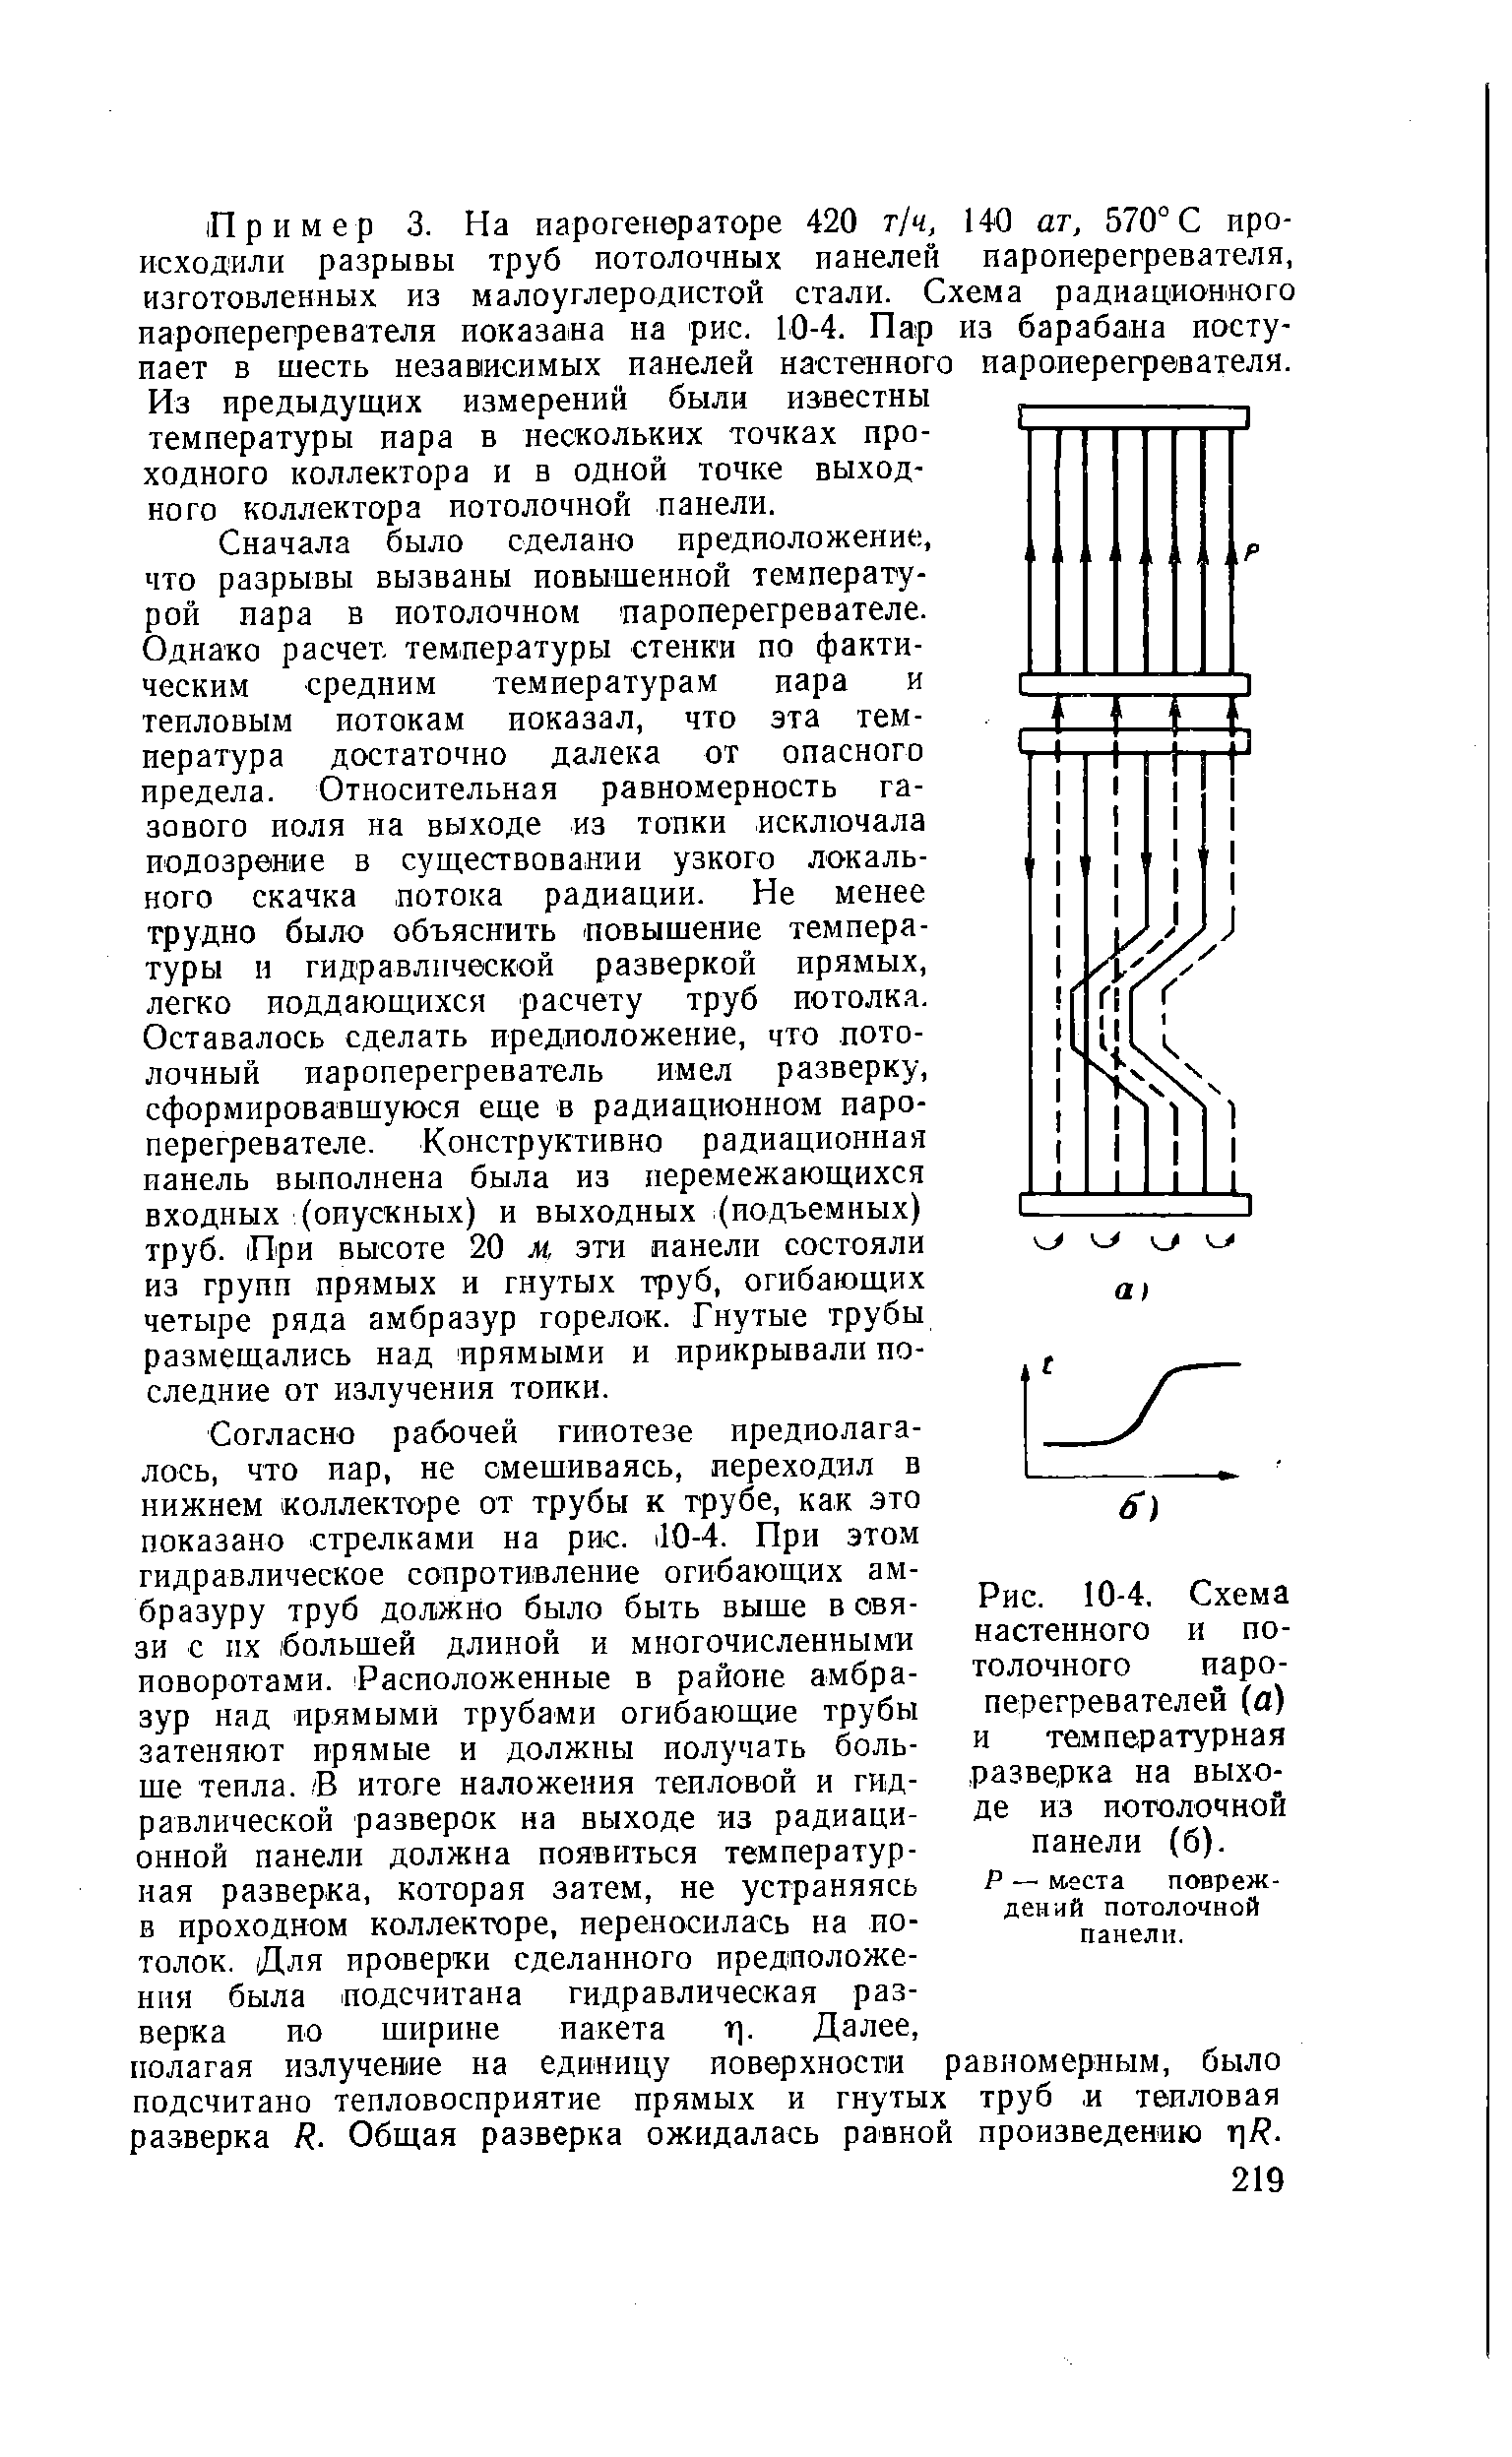 Рис. 10-4, Схема настенного и потолочного иаро-перегревателей (а) и температурная разверка на выходе из потолочной панели (б).
